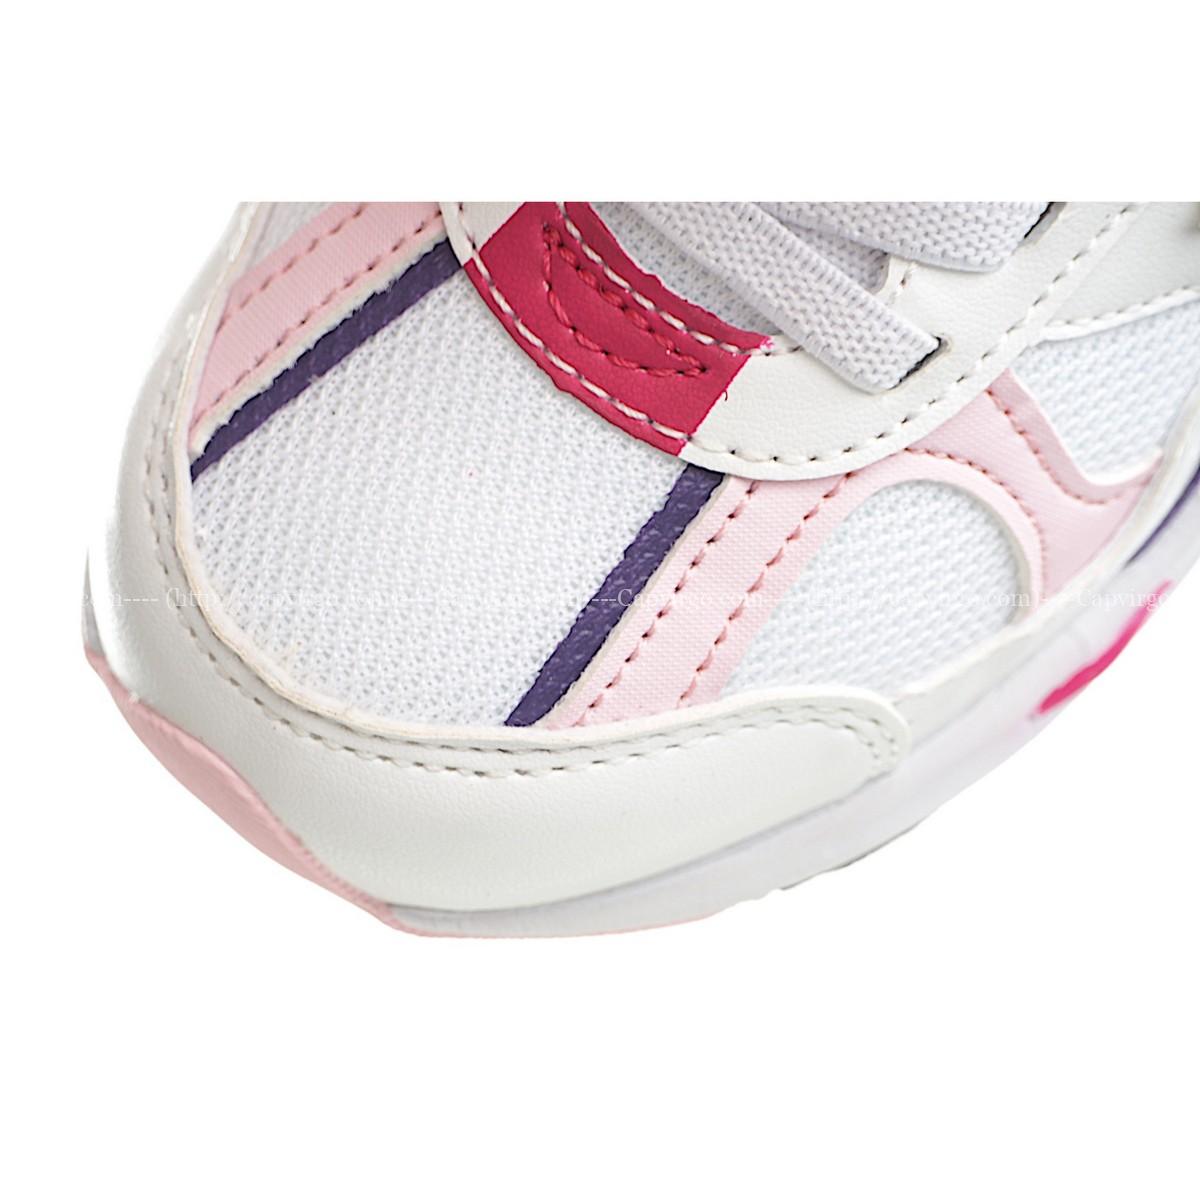 Giày chạy bộ trẻ em newbalance 878 - NB878 màu trắng hồng